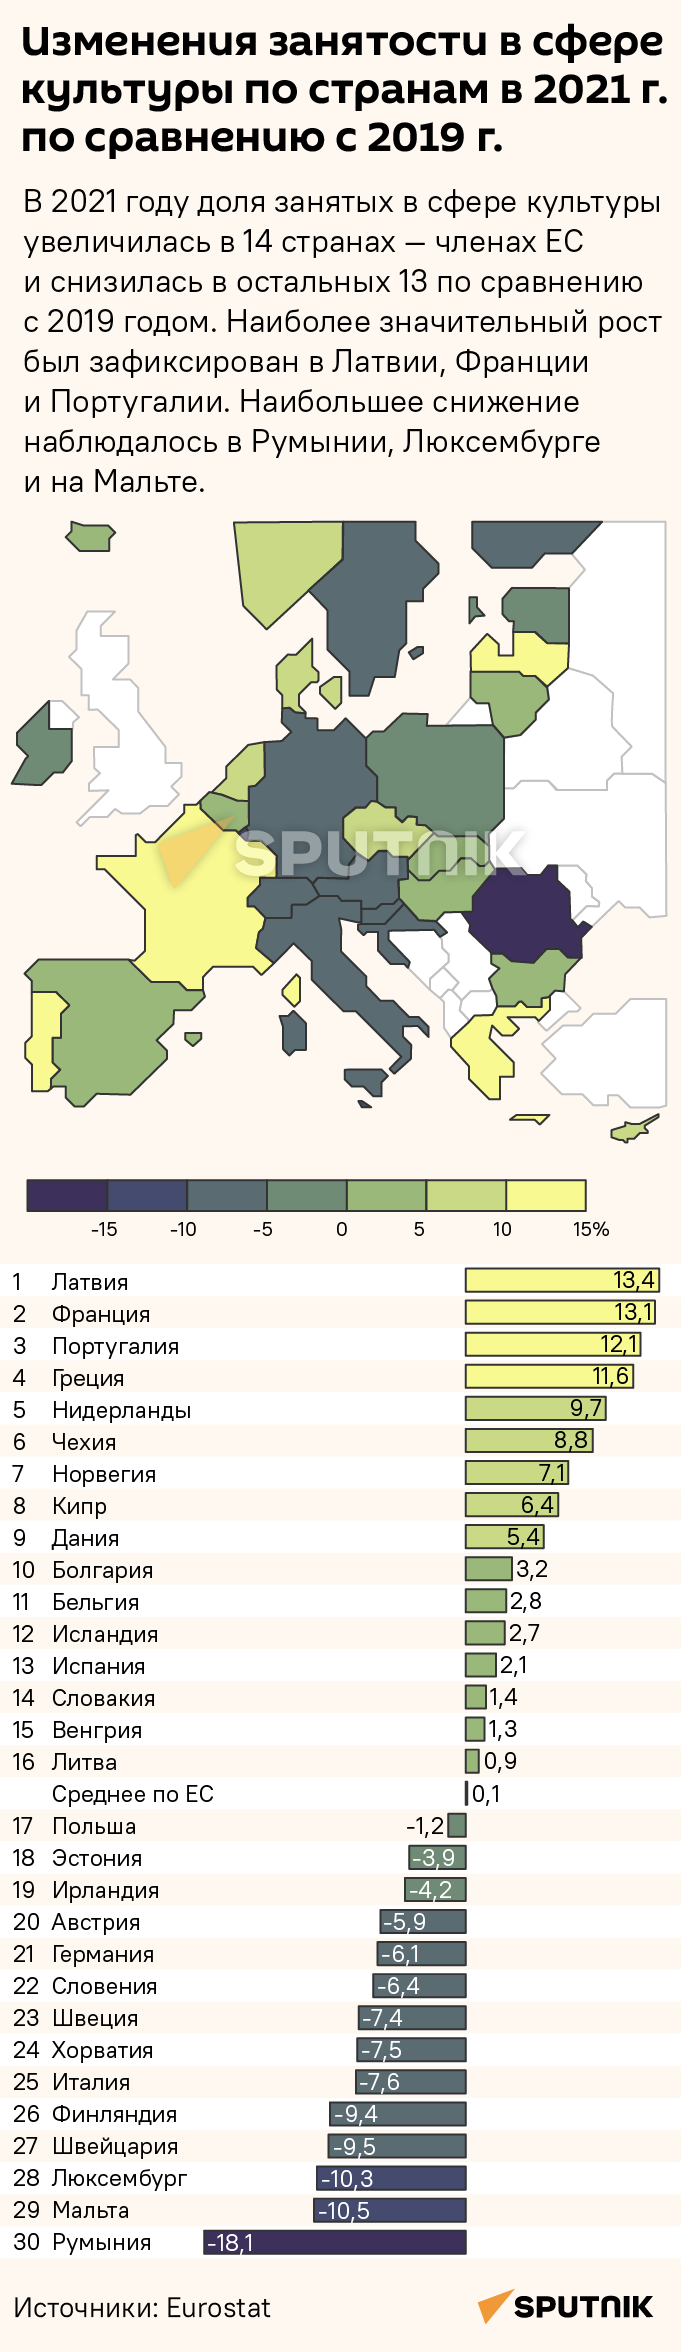 Изменения занятости в сфере культуры по странам ЕС в 2021 г. по сравнению с 2019 г. - Sputnik Латвия